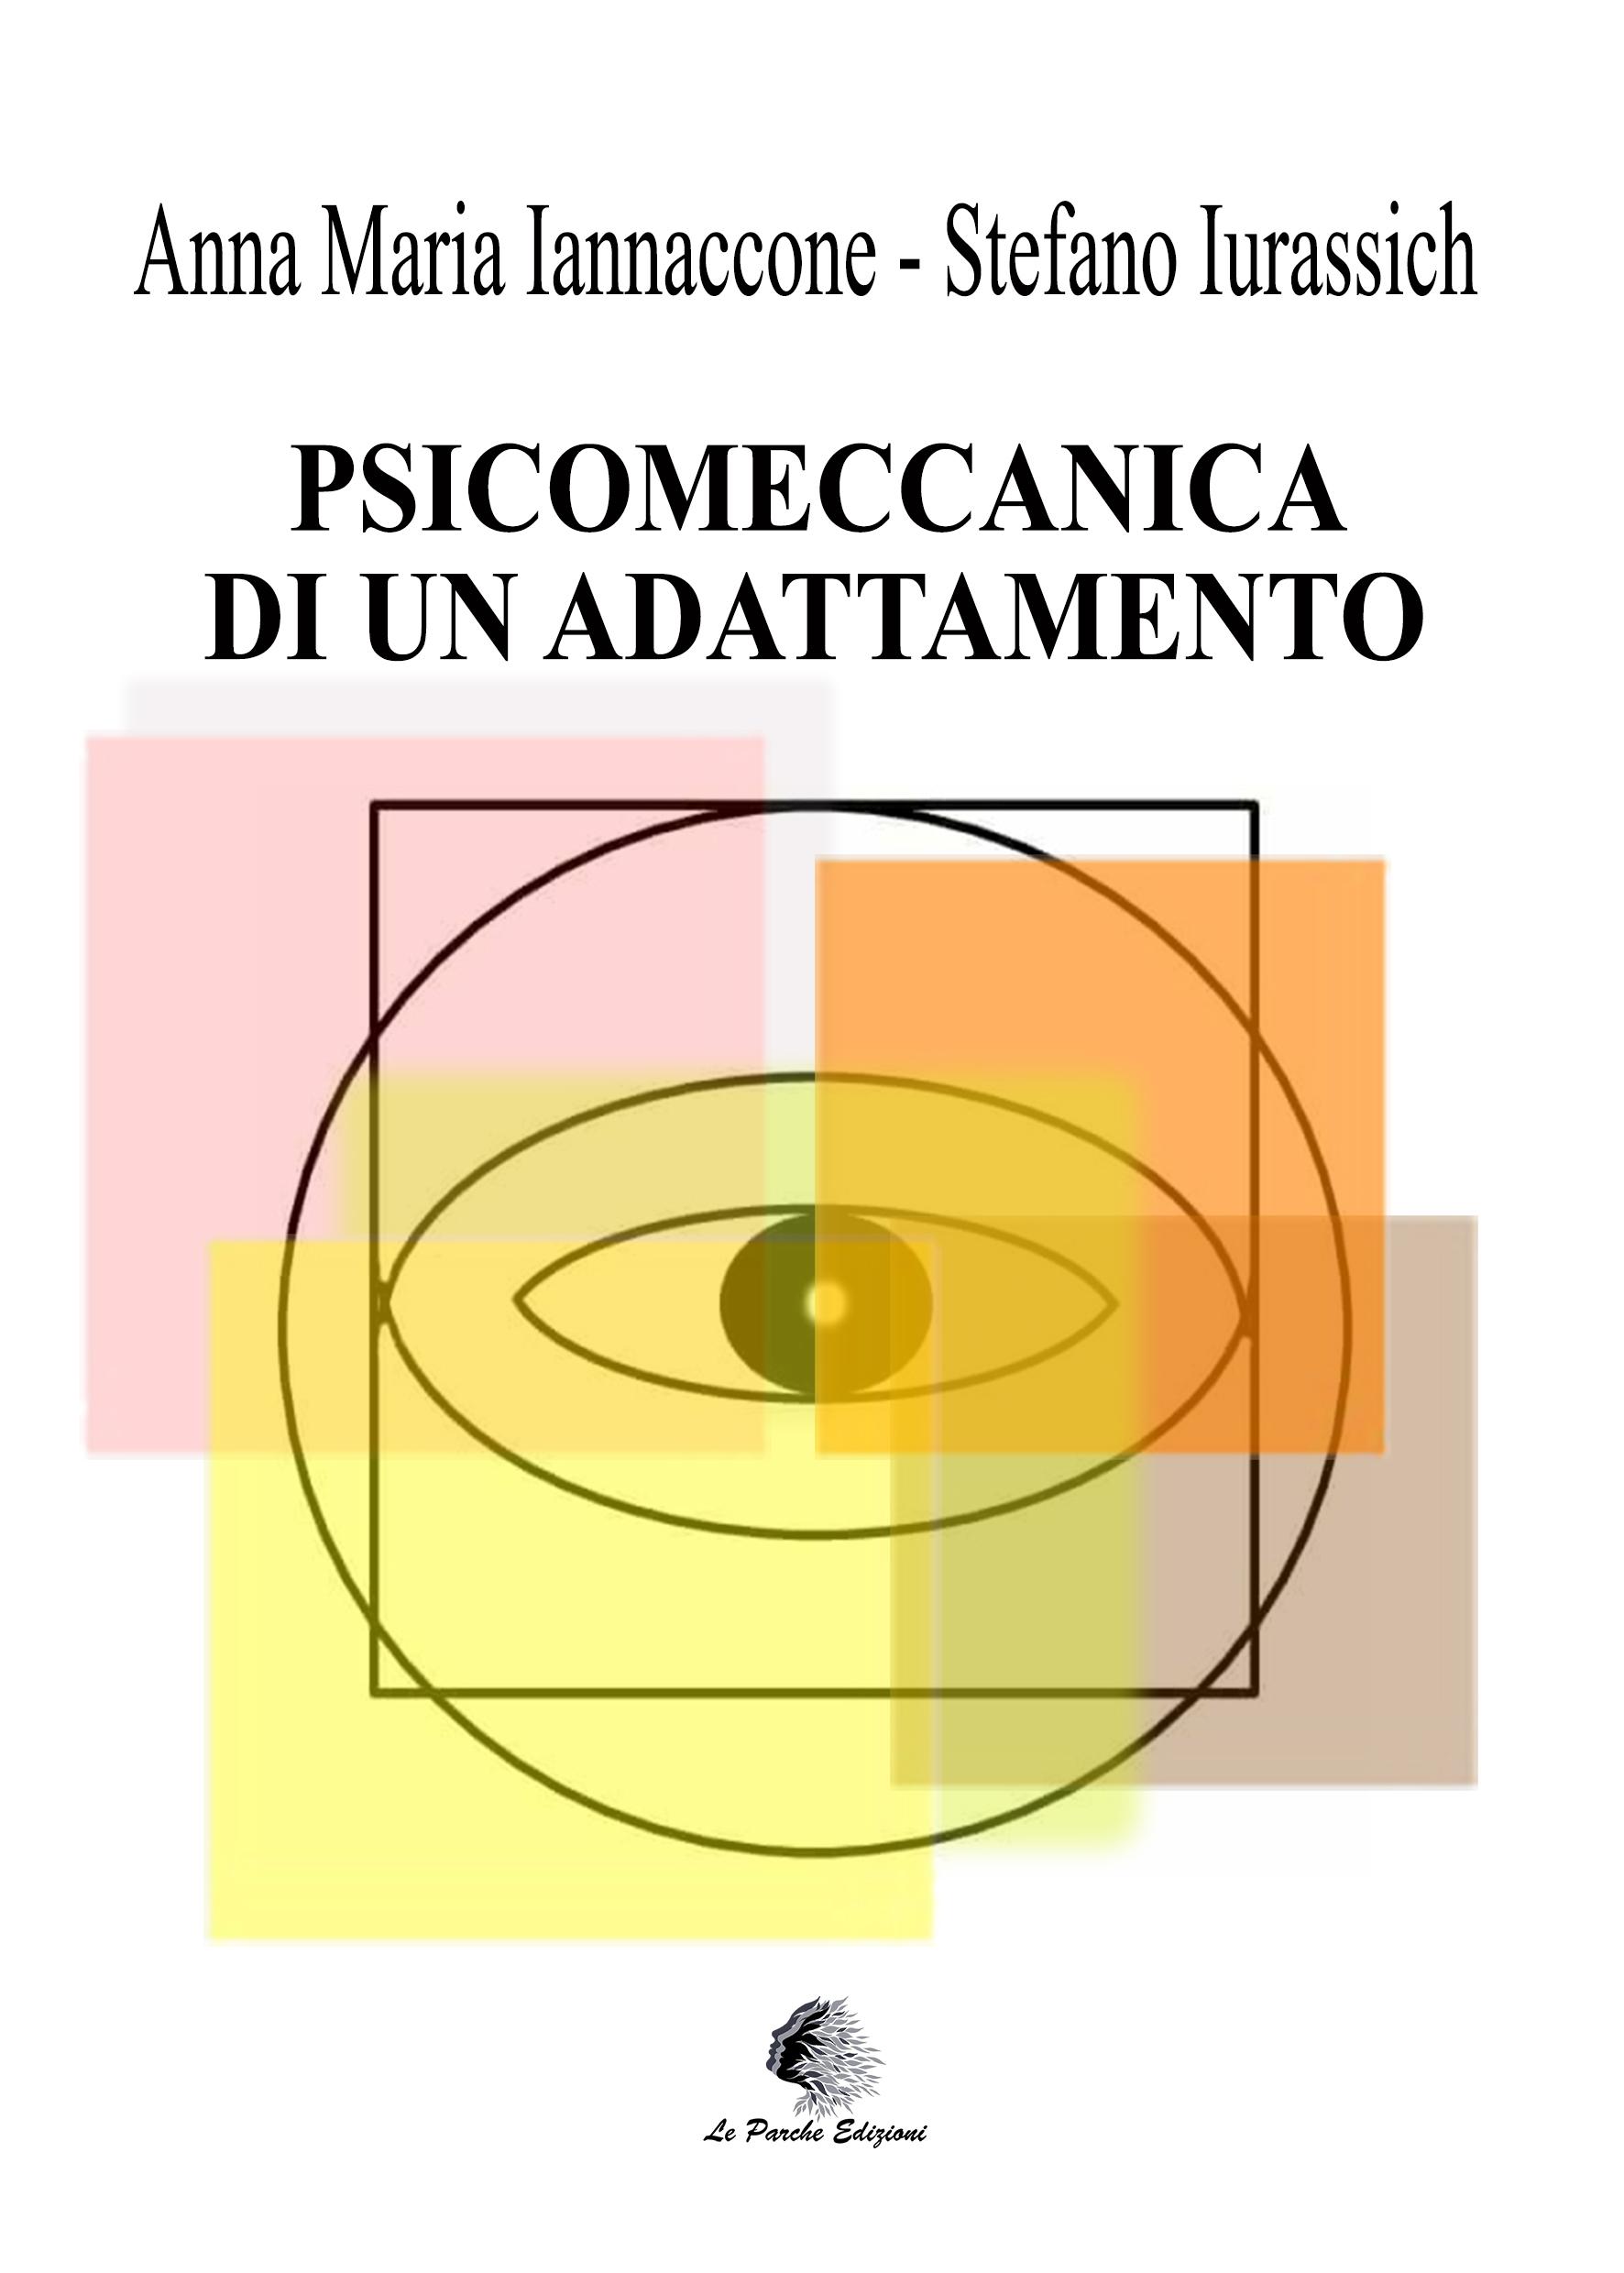 "Psicomeccanica di un Adattamento" di Anna Maria Iannaccone e Stefano Iurassich